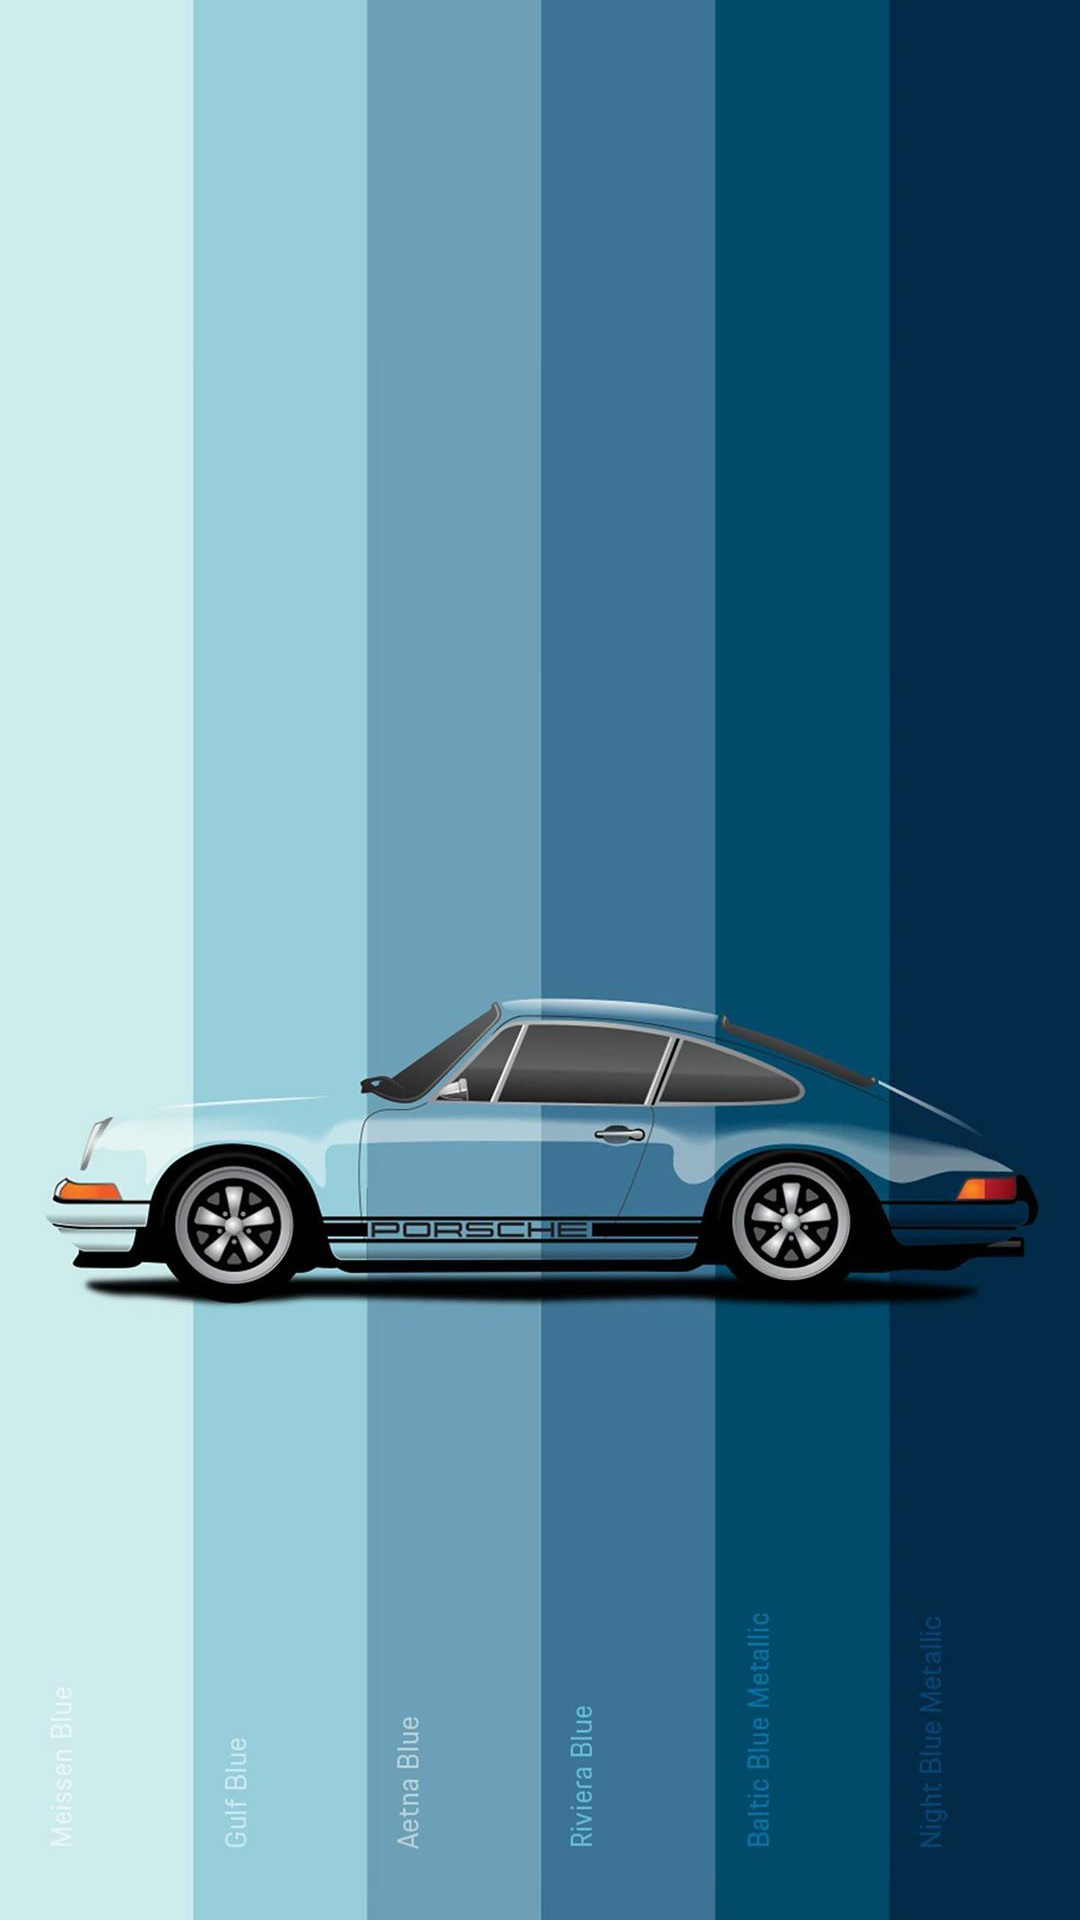 1080x1920 Porsche Wallpapers Top Best Quality Porsche Backgrounds (HD,4k